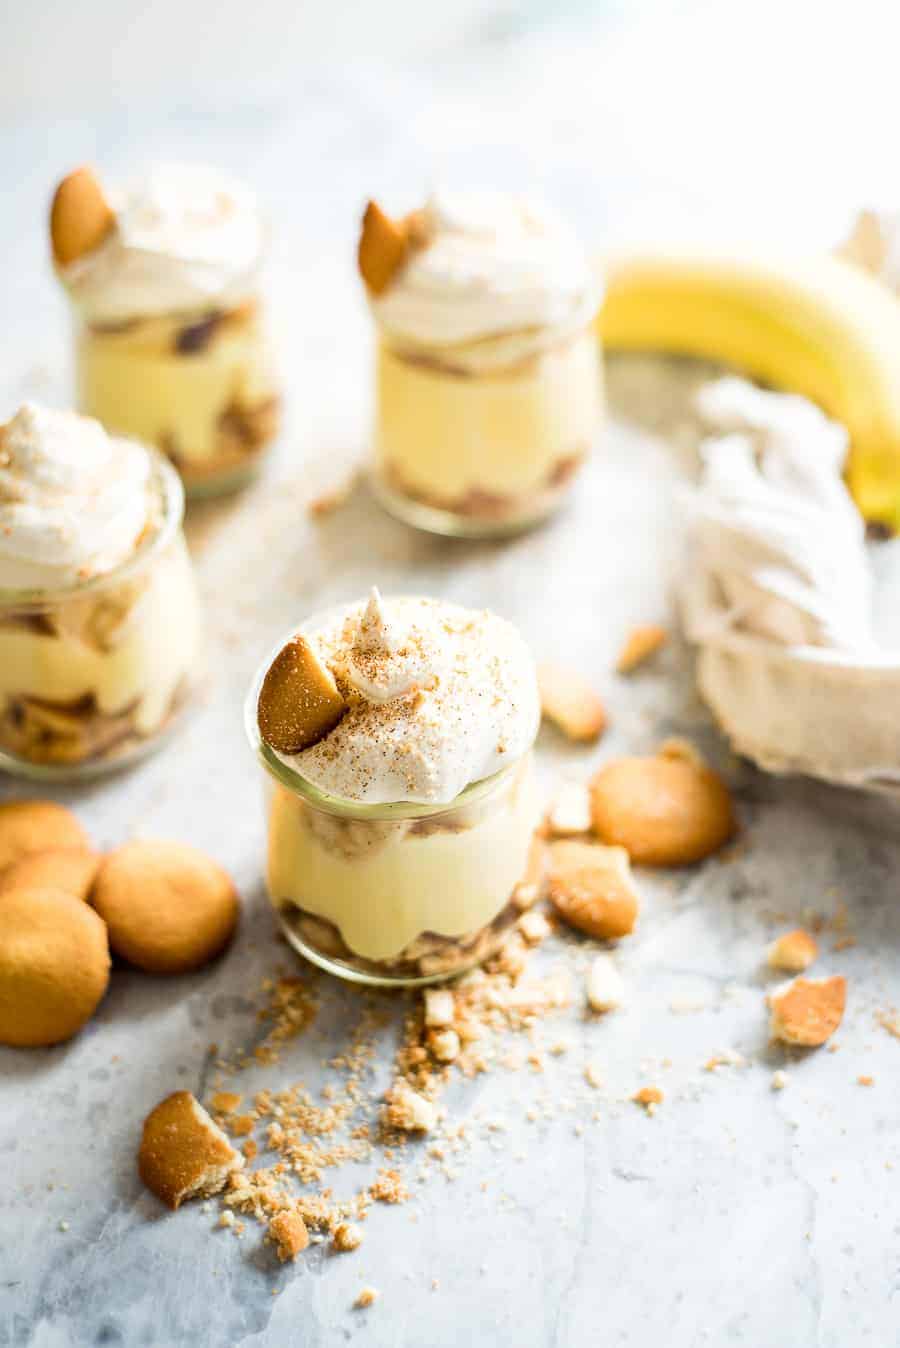 Vanilla Wafers and Banana pudding in a jar.